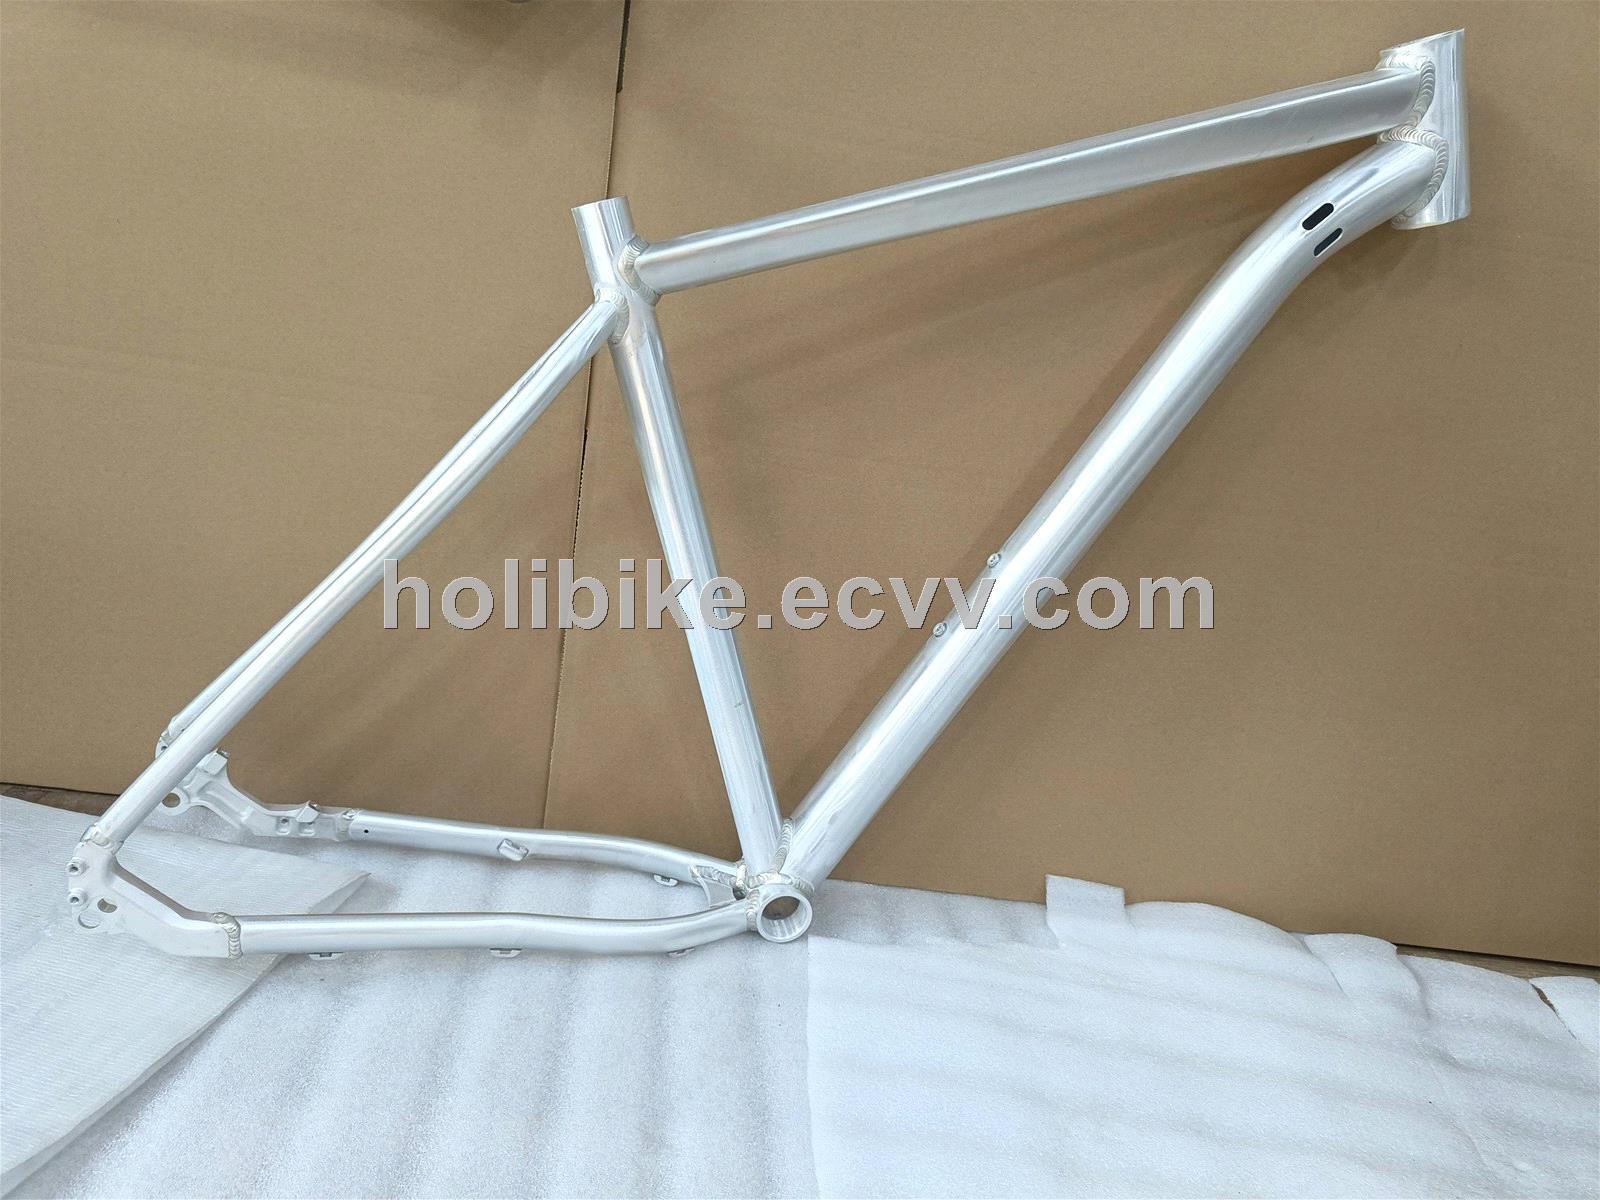 Al6061 bicycle Frame with Barrel Shaft TIG Welding Frame Aluminum Alloy Road Bike Frame